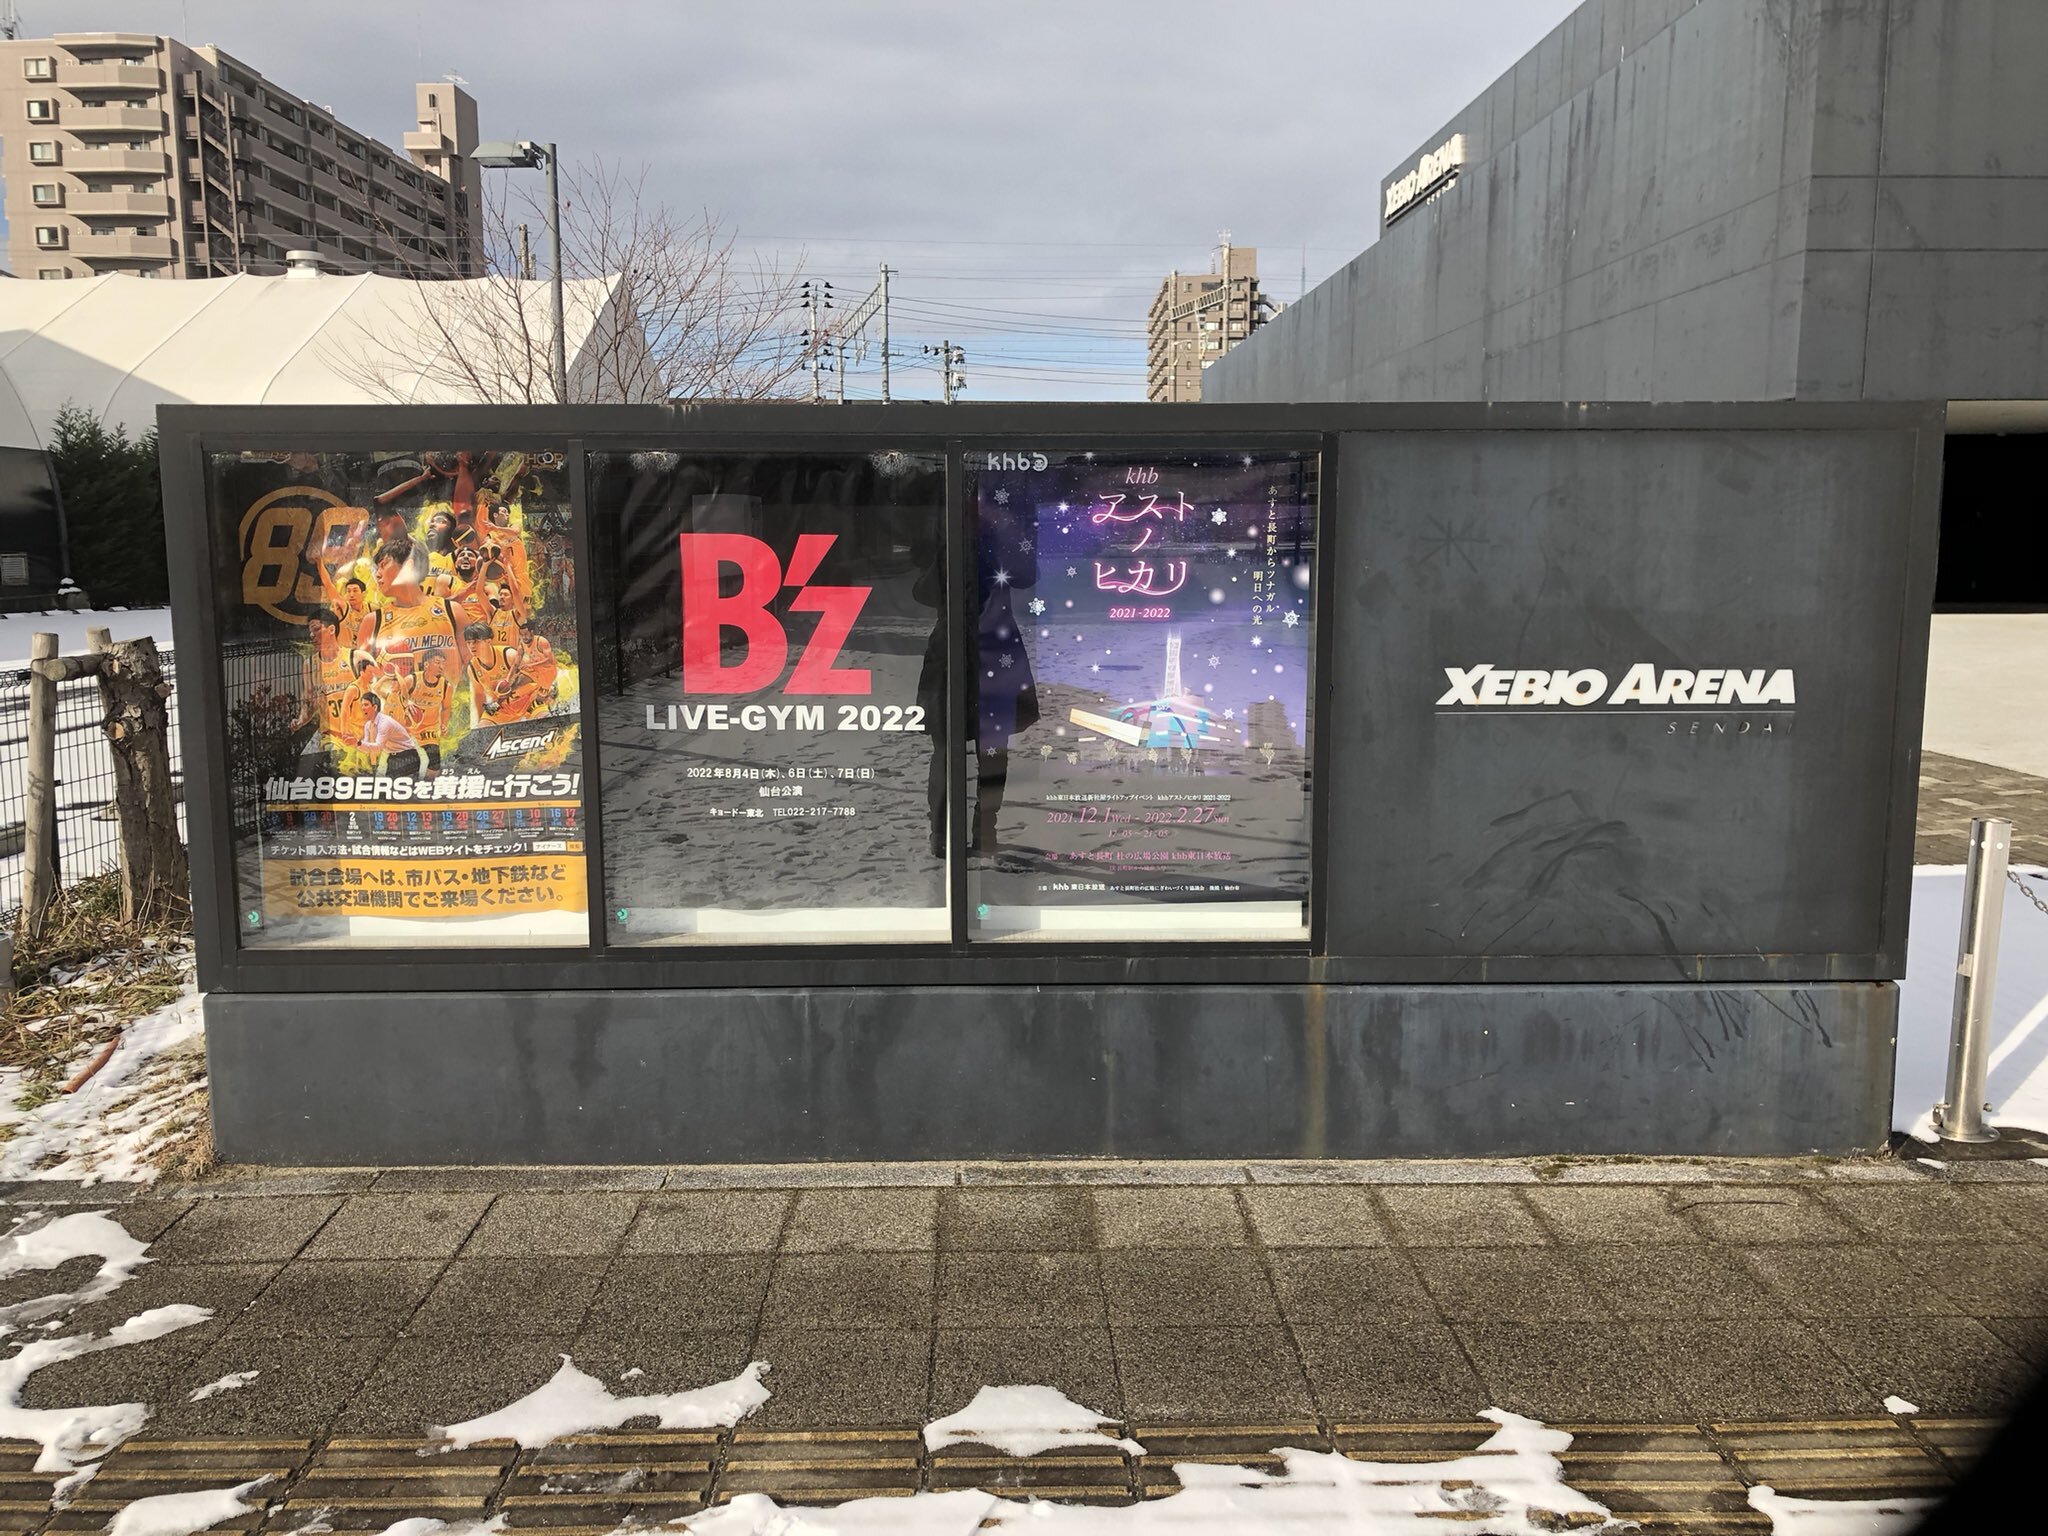 ゼビオアリーナ仙台に掲出された「B'z LIVE-GYM 2022」仙台公演の告知ポスターの写真